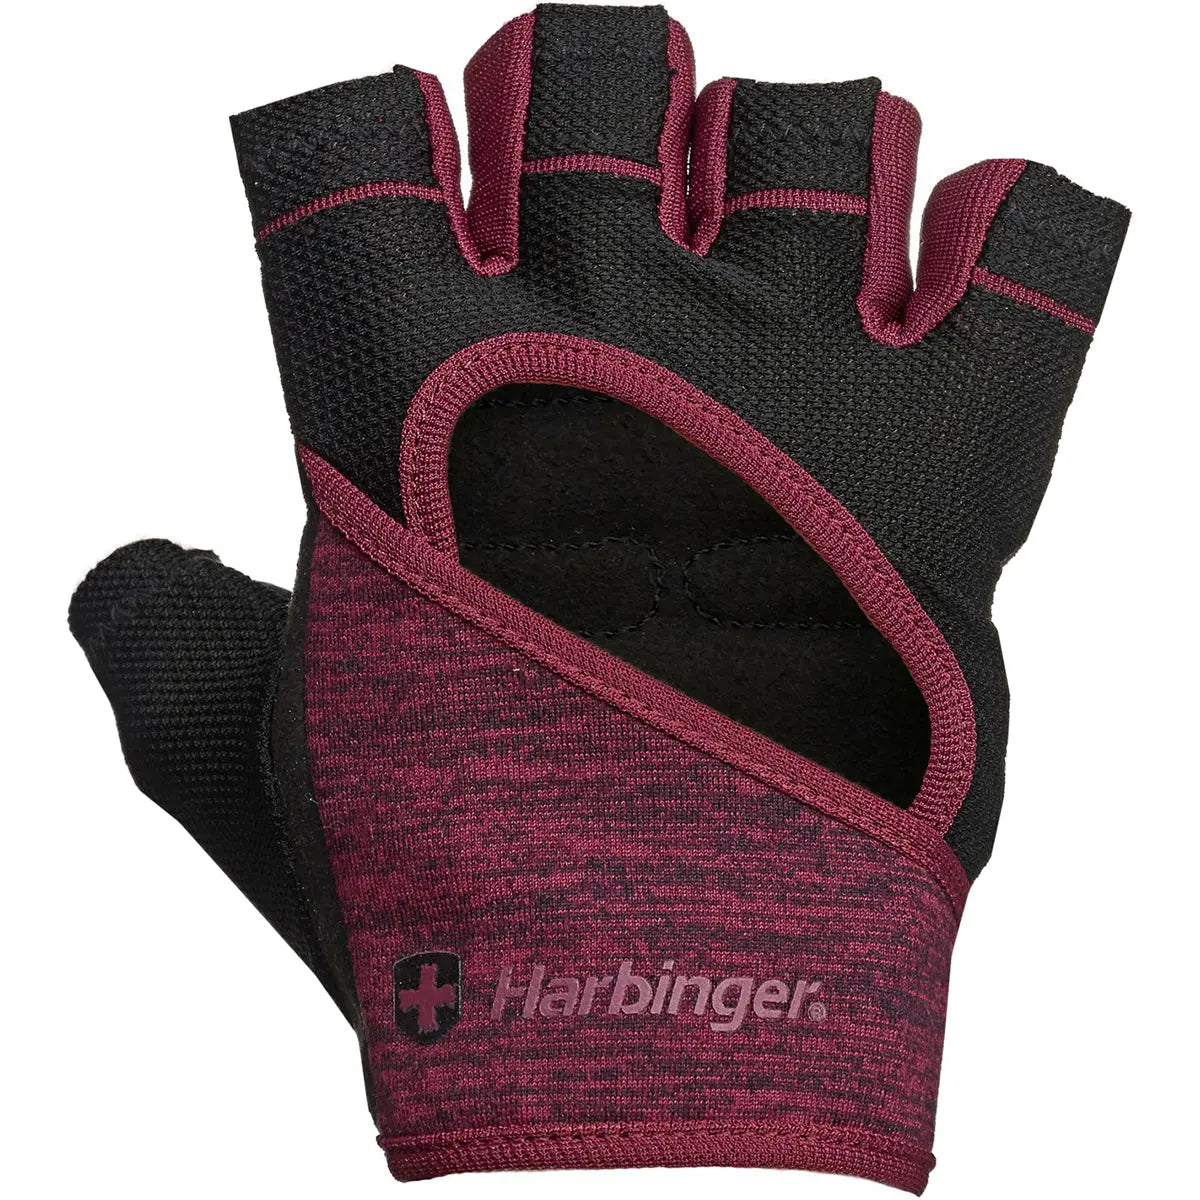 Harbinger Women's FlexFit Weight Lifting Gloves - Black/Merlot Harbinger